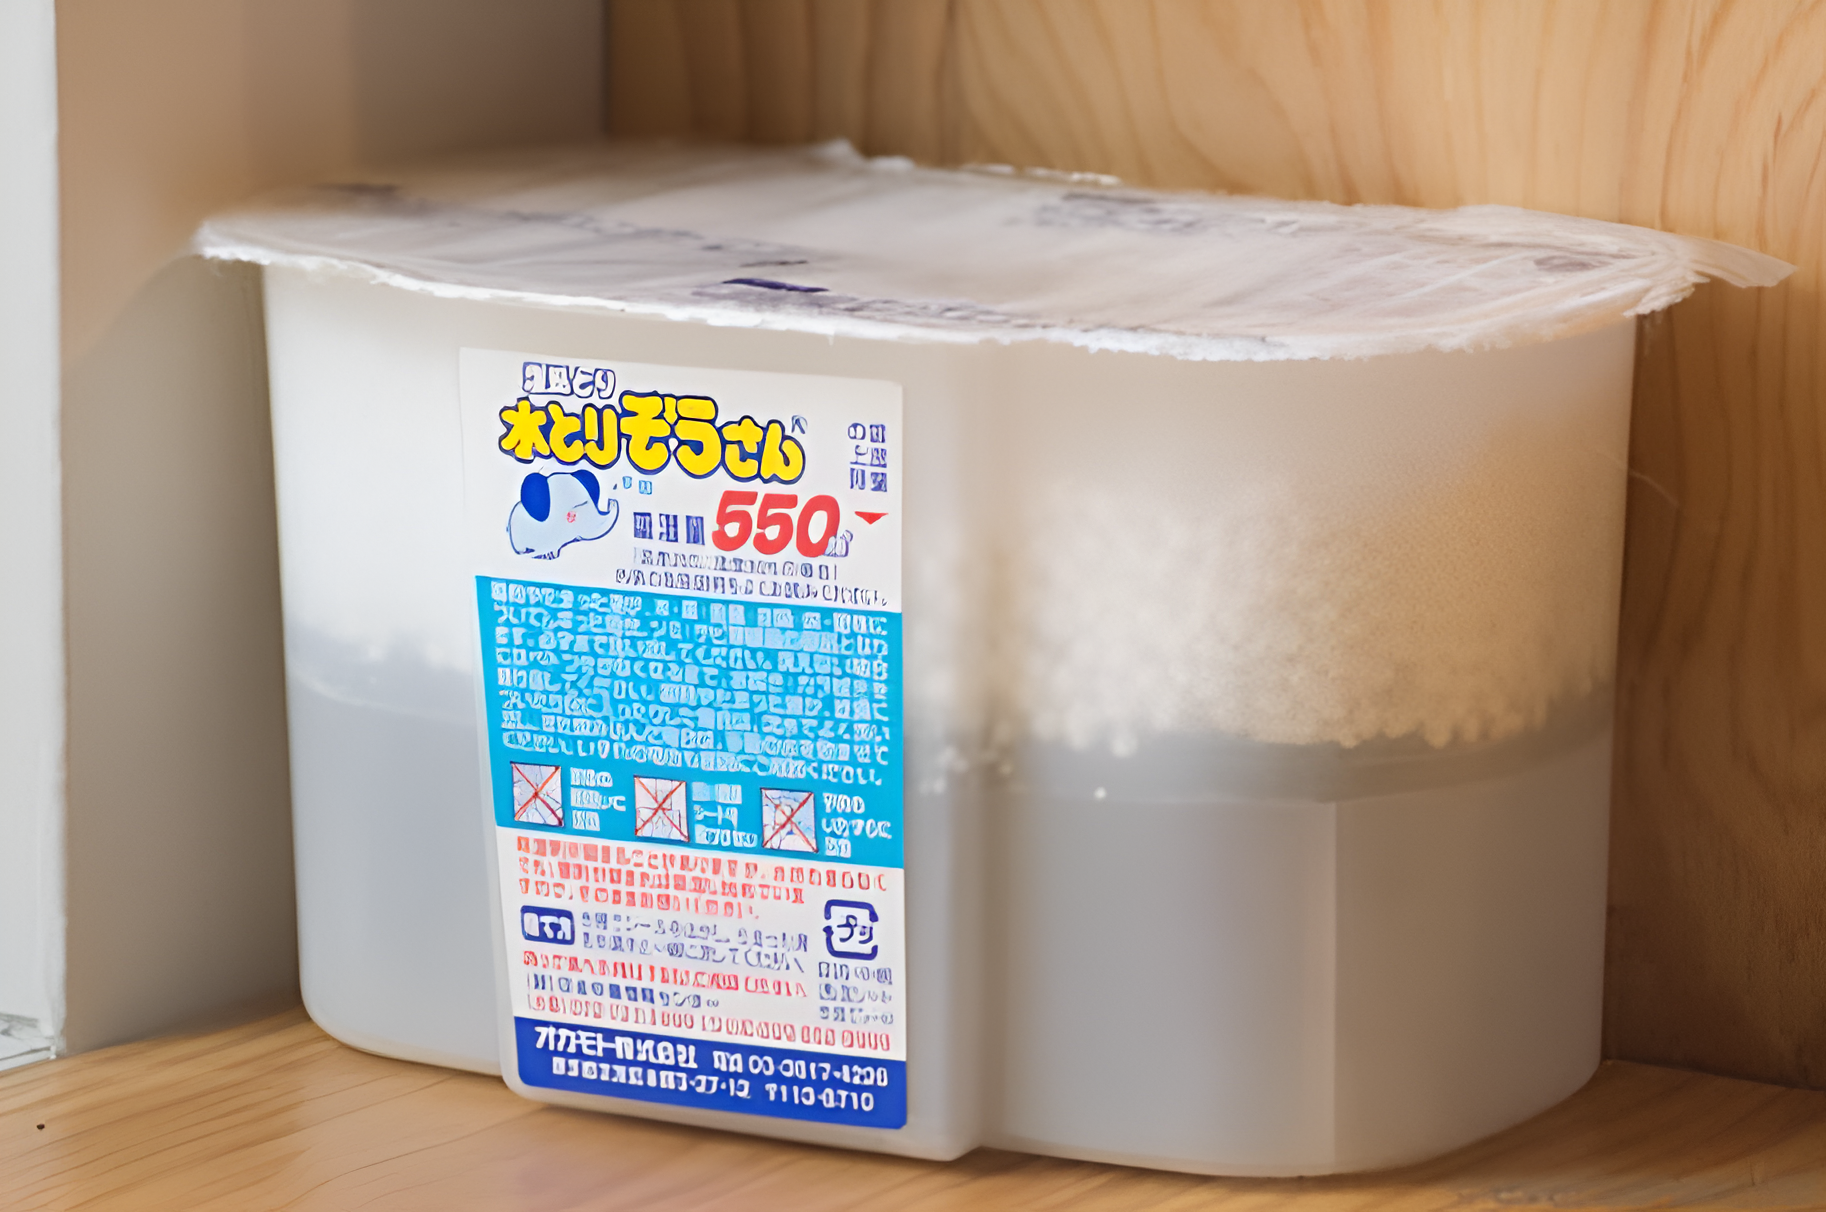 Hướng dẫn cách sử dụng hộp hút ẩm của Nhật